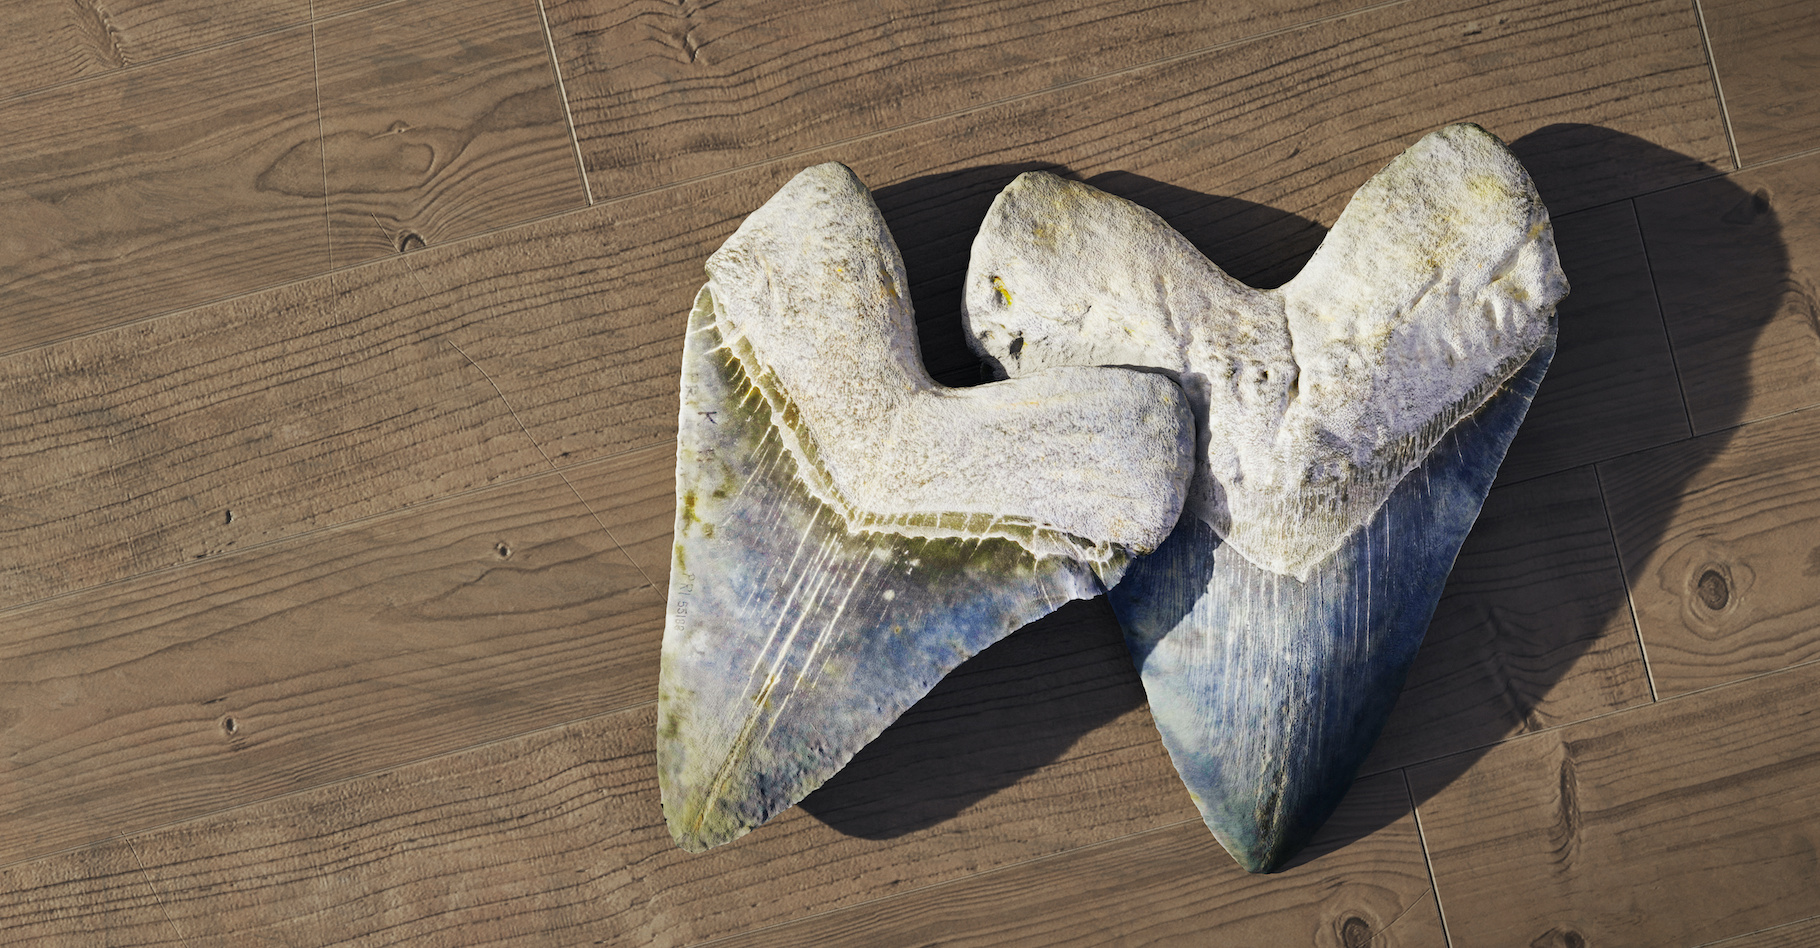 Les mégalodons sont surtout connus par les dents – et les vertèbres – fossiles que les chercheurs ont retrouvées un peu partout dans le monde. Aujourd’hui, ils affirment que la taille de ce requin de la préhistoire variait en fonction de la température de l’eau dans laquelle il évoluait. © dottedyeti, Adobe Stock